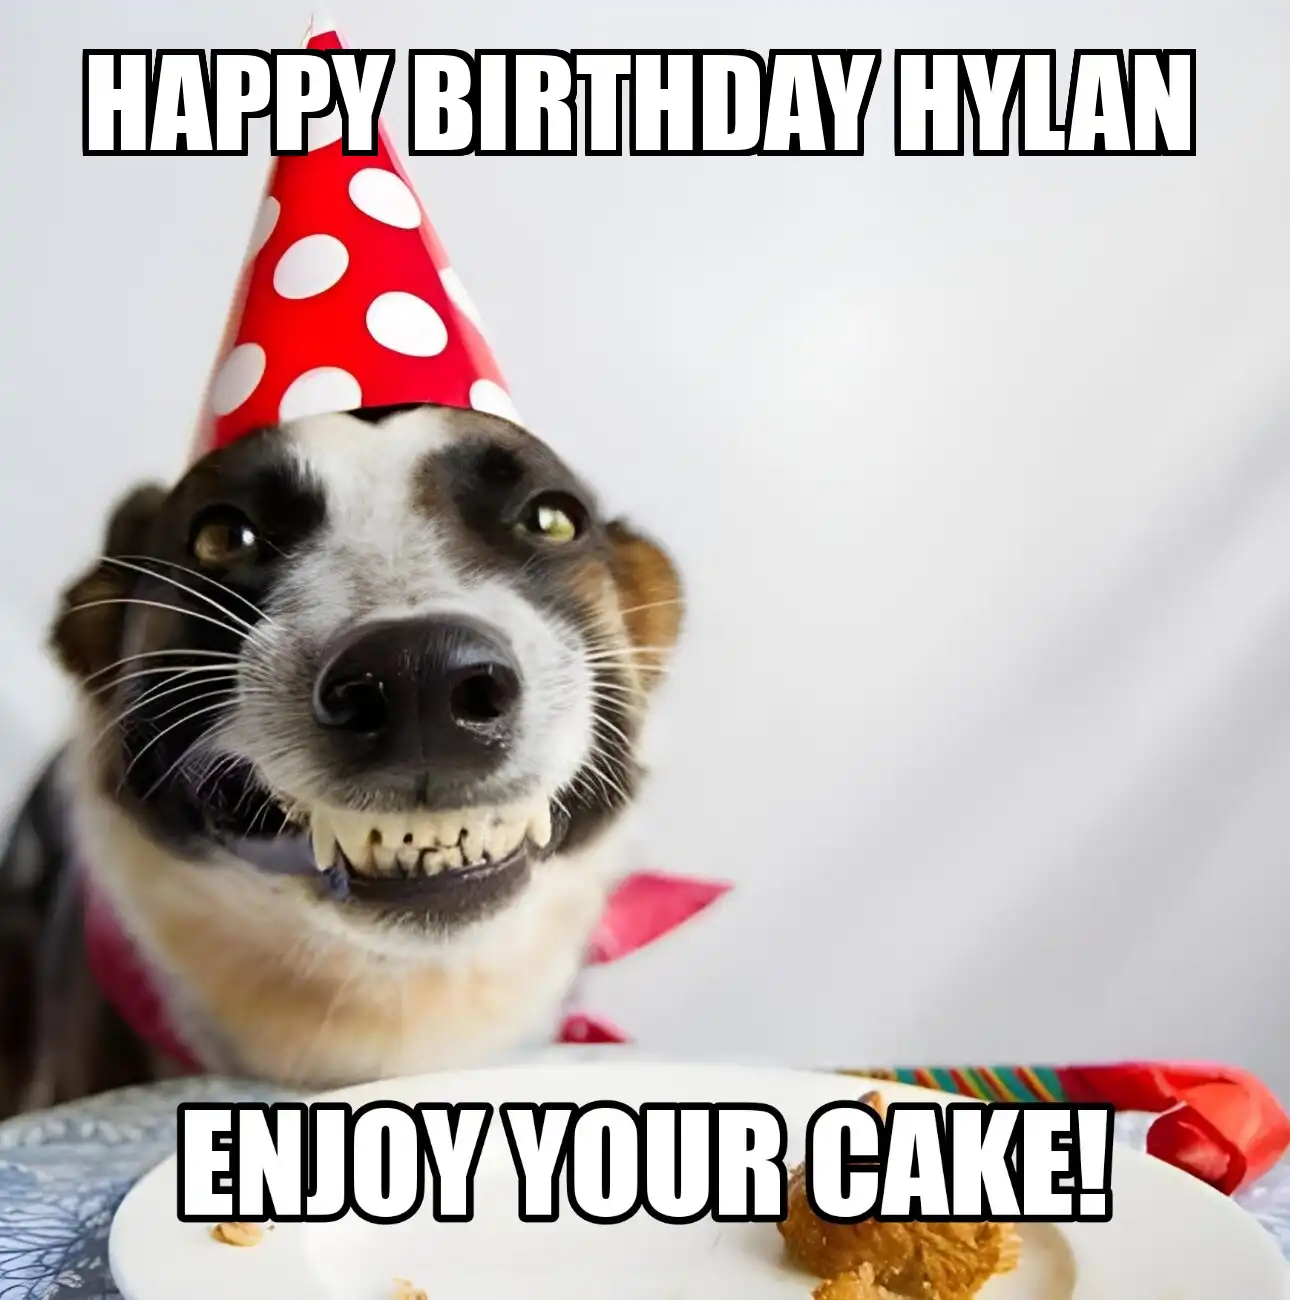 Happy Birthday Hylan Enjoy Your Cake Dog Meme